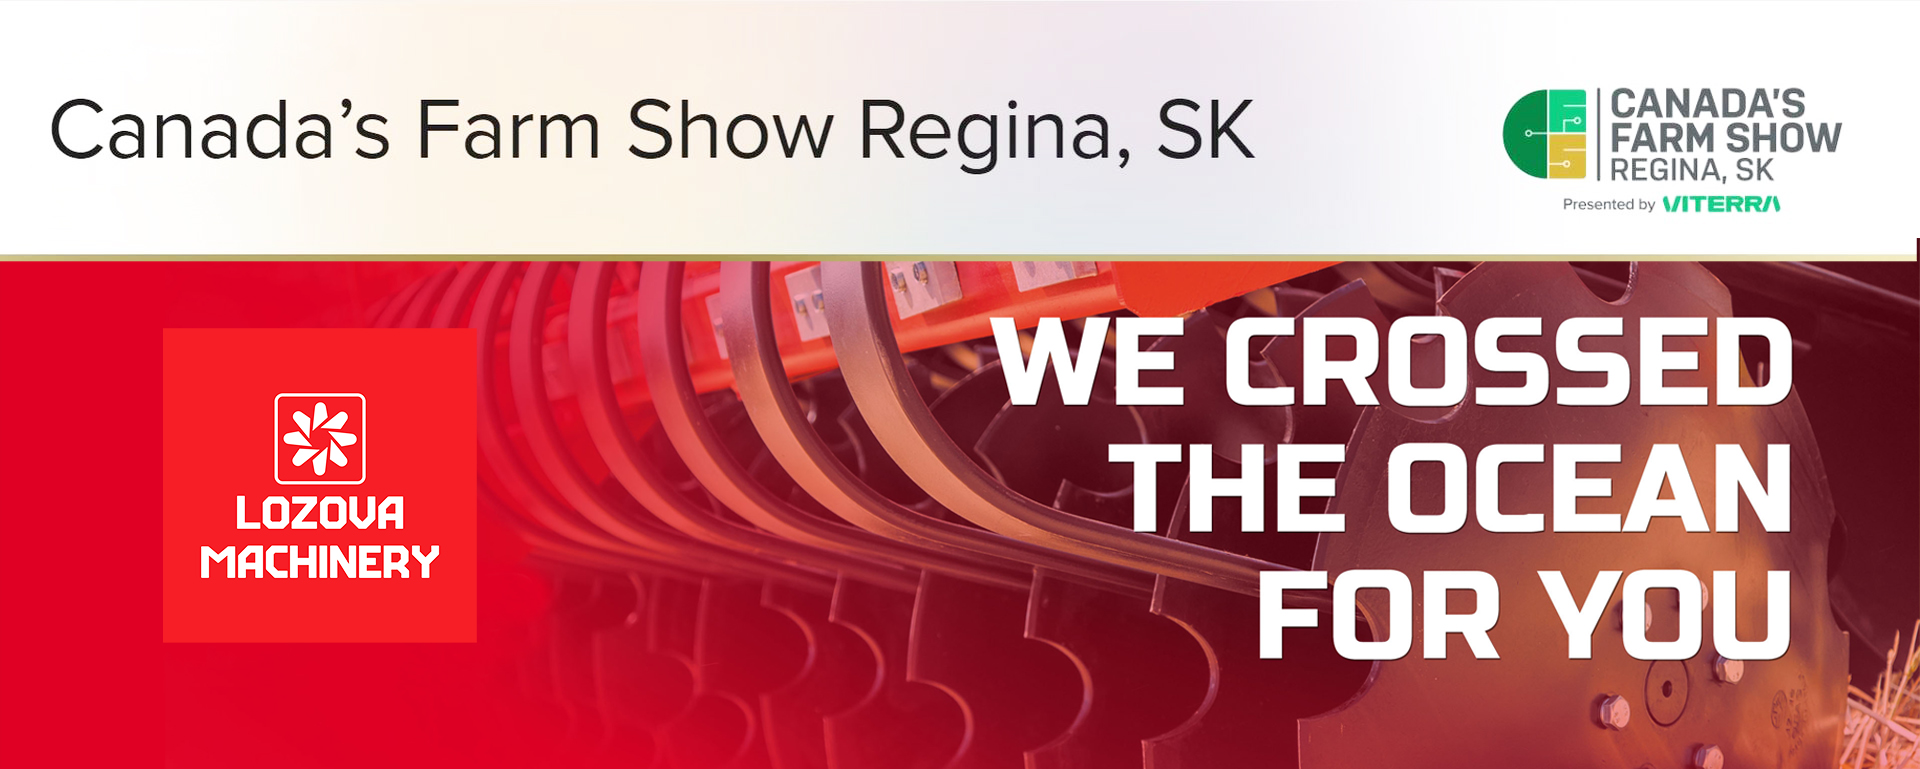 Canada’s Farm Show Regina, SK